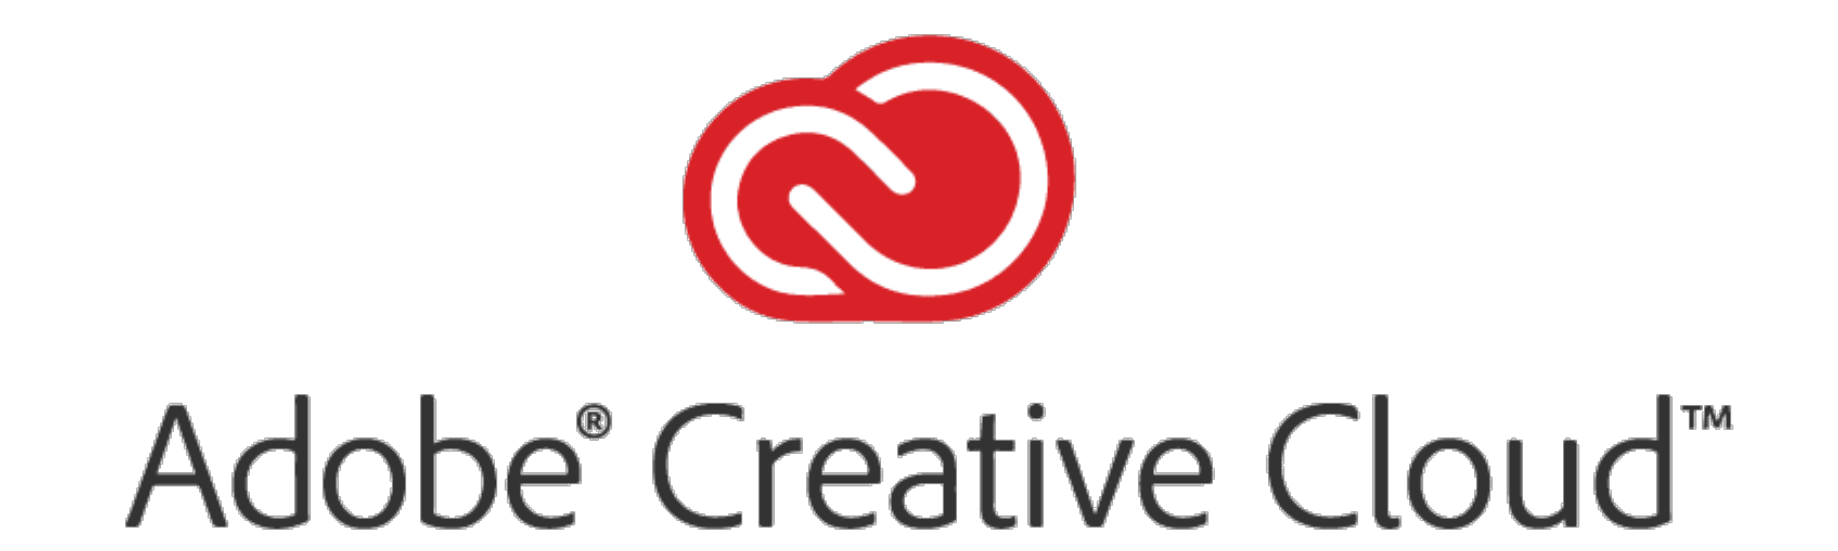 Adobe Creative Cloud Logo - I